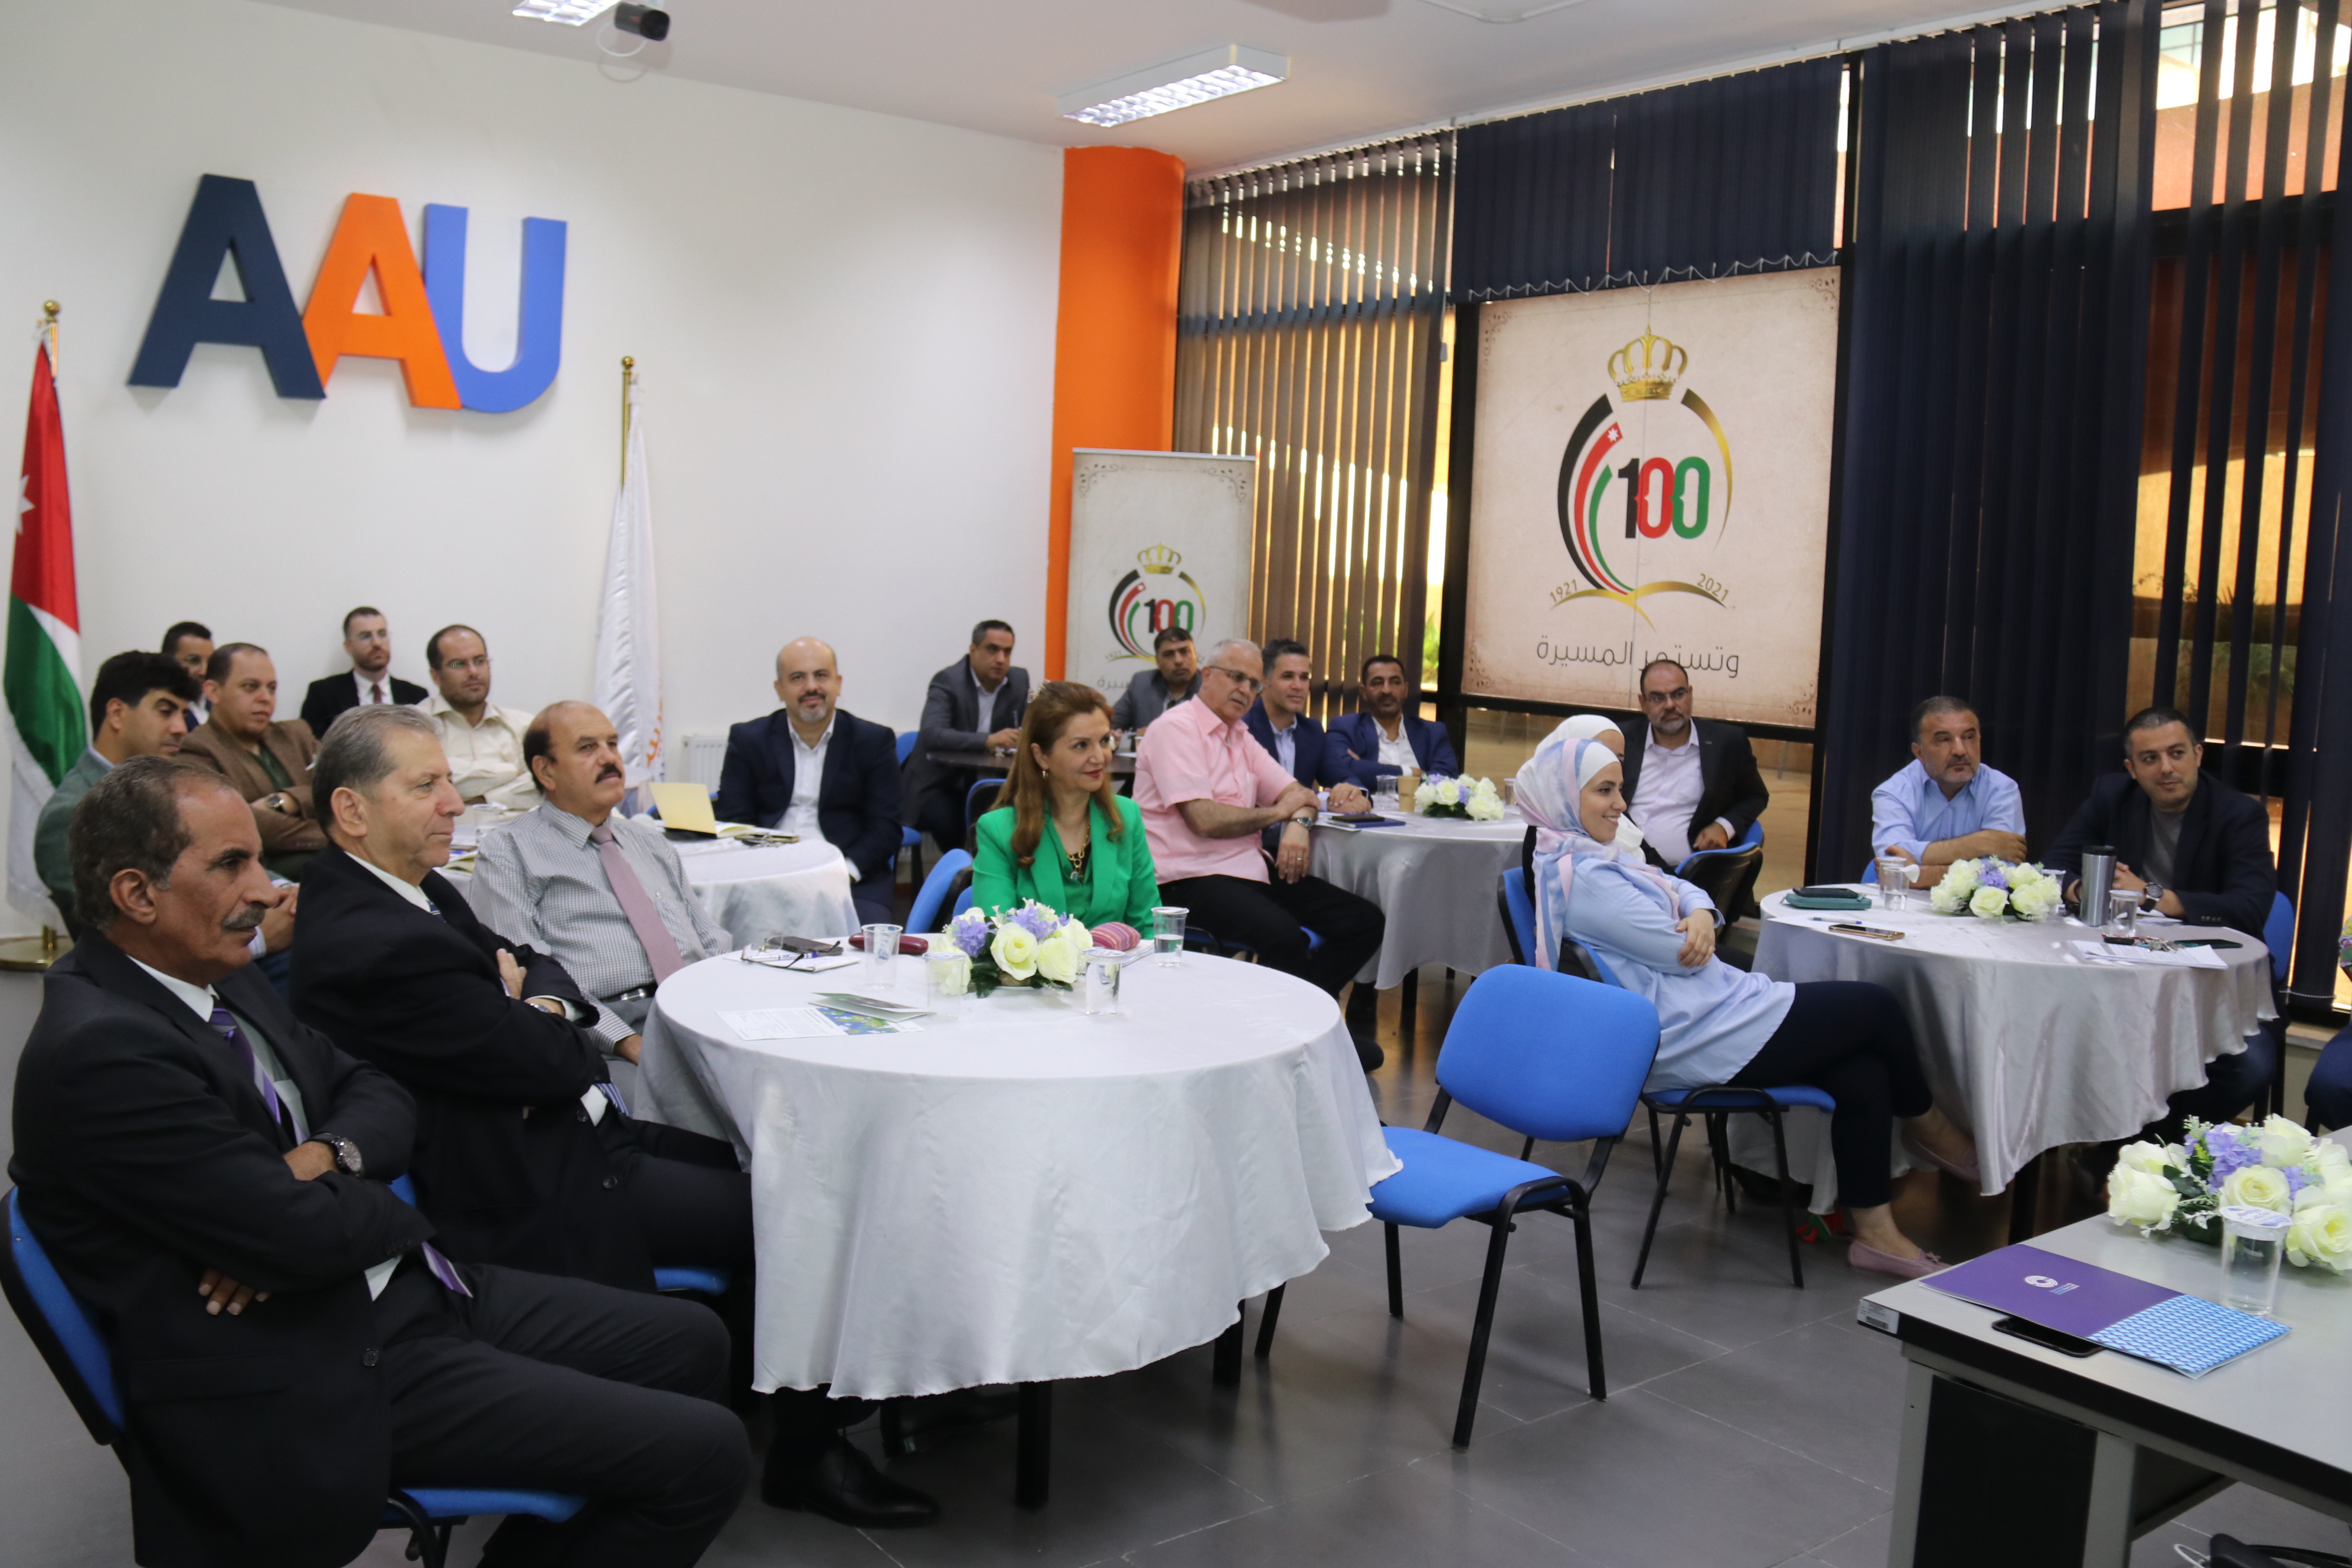 جامعة عمان العربية تنظم ورشة حول فرص التعاون مع مؤسسة ألكسندر فون همبولت الألمانية2